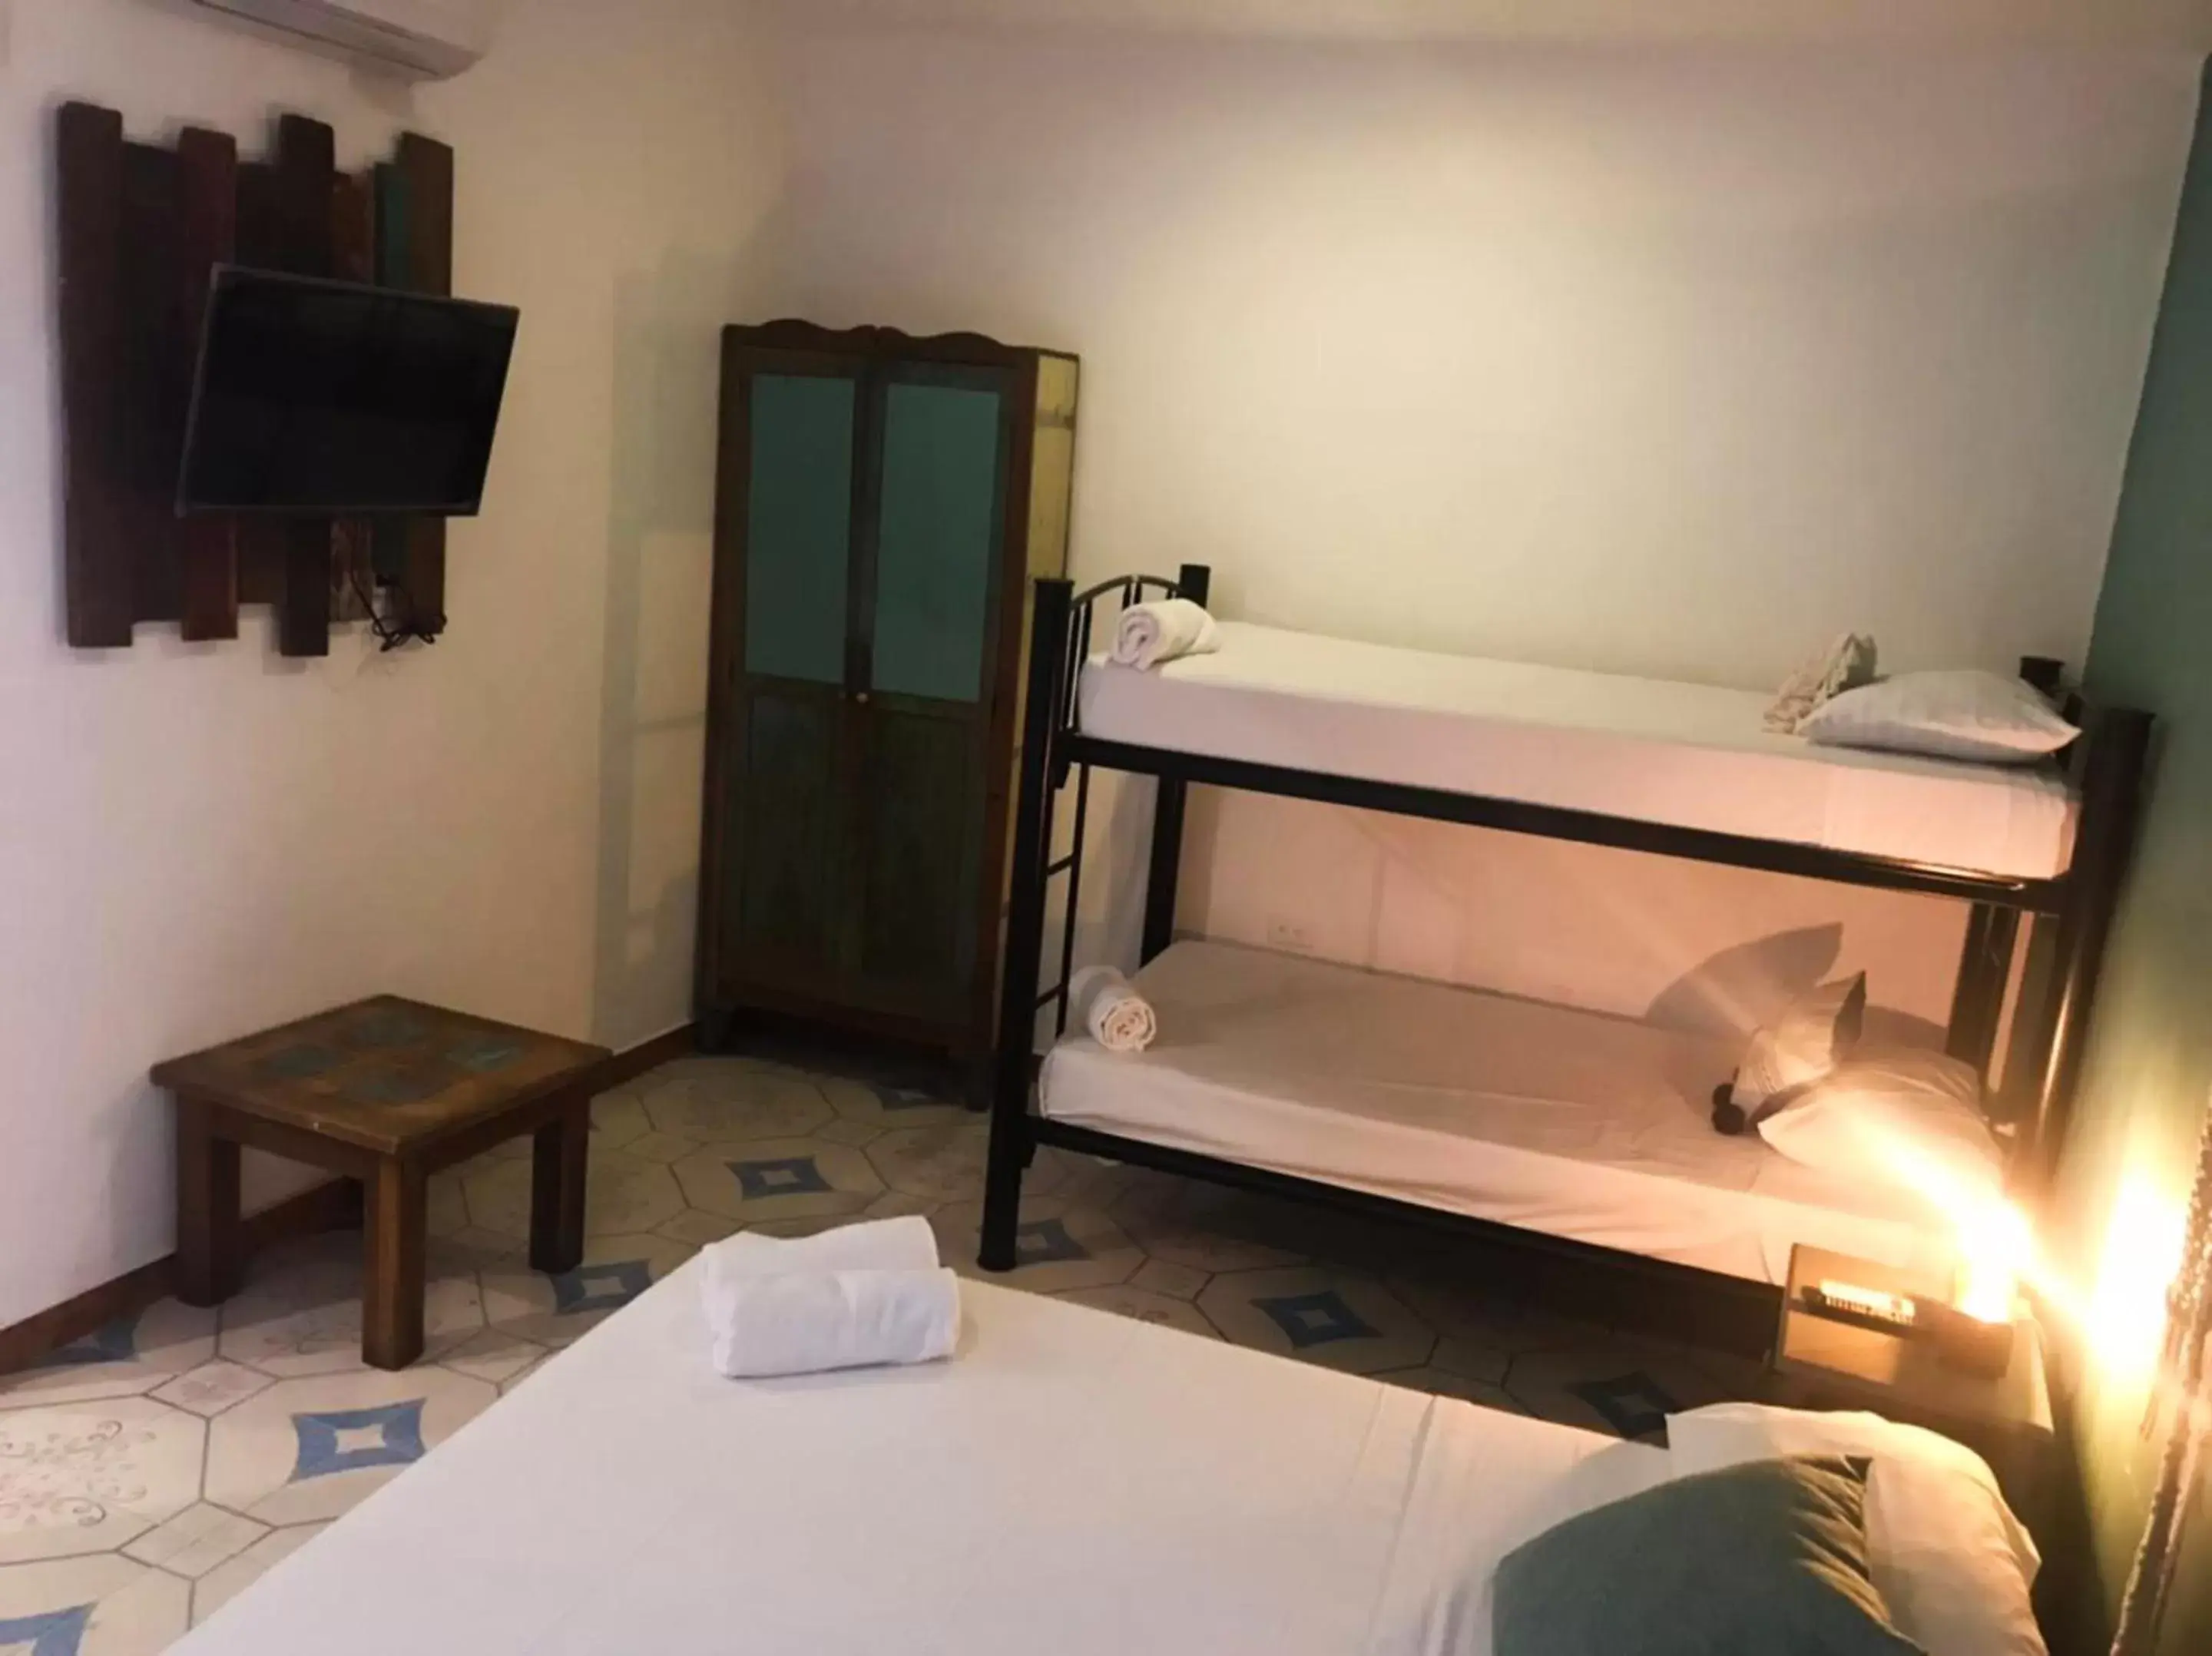 Bedroom, Bunk Bed in Casa Colonial Tulum